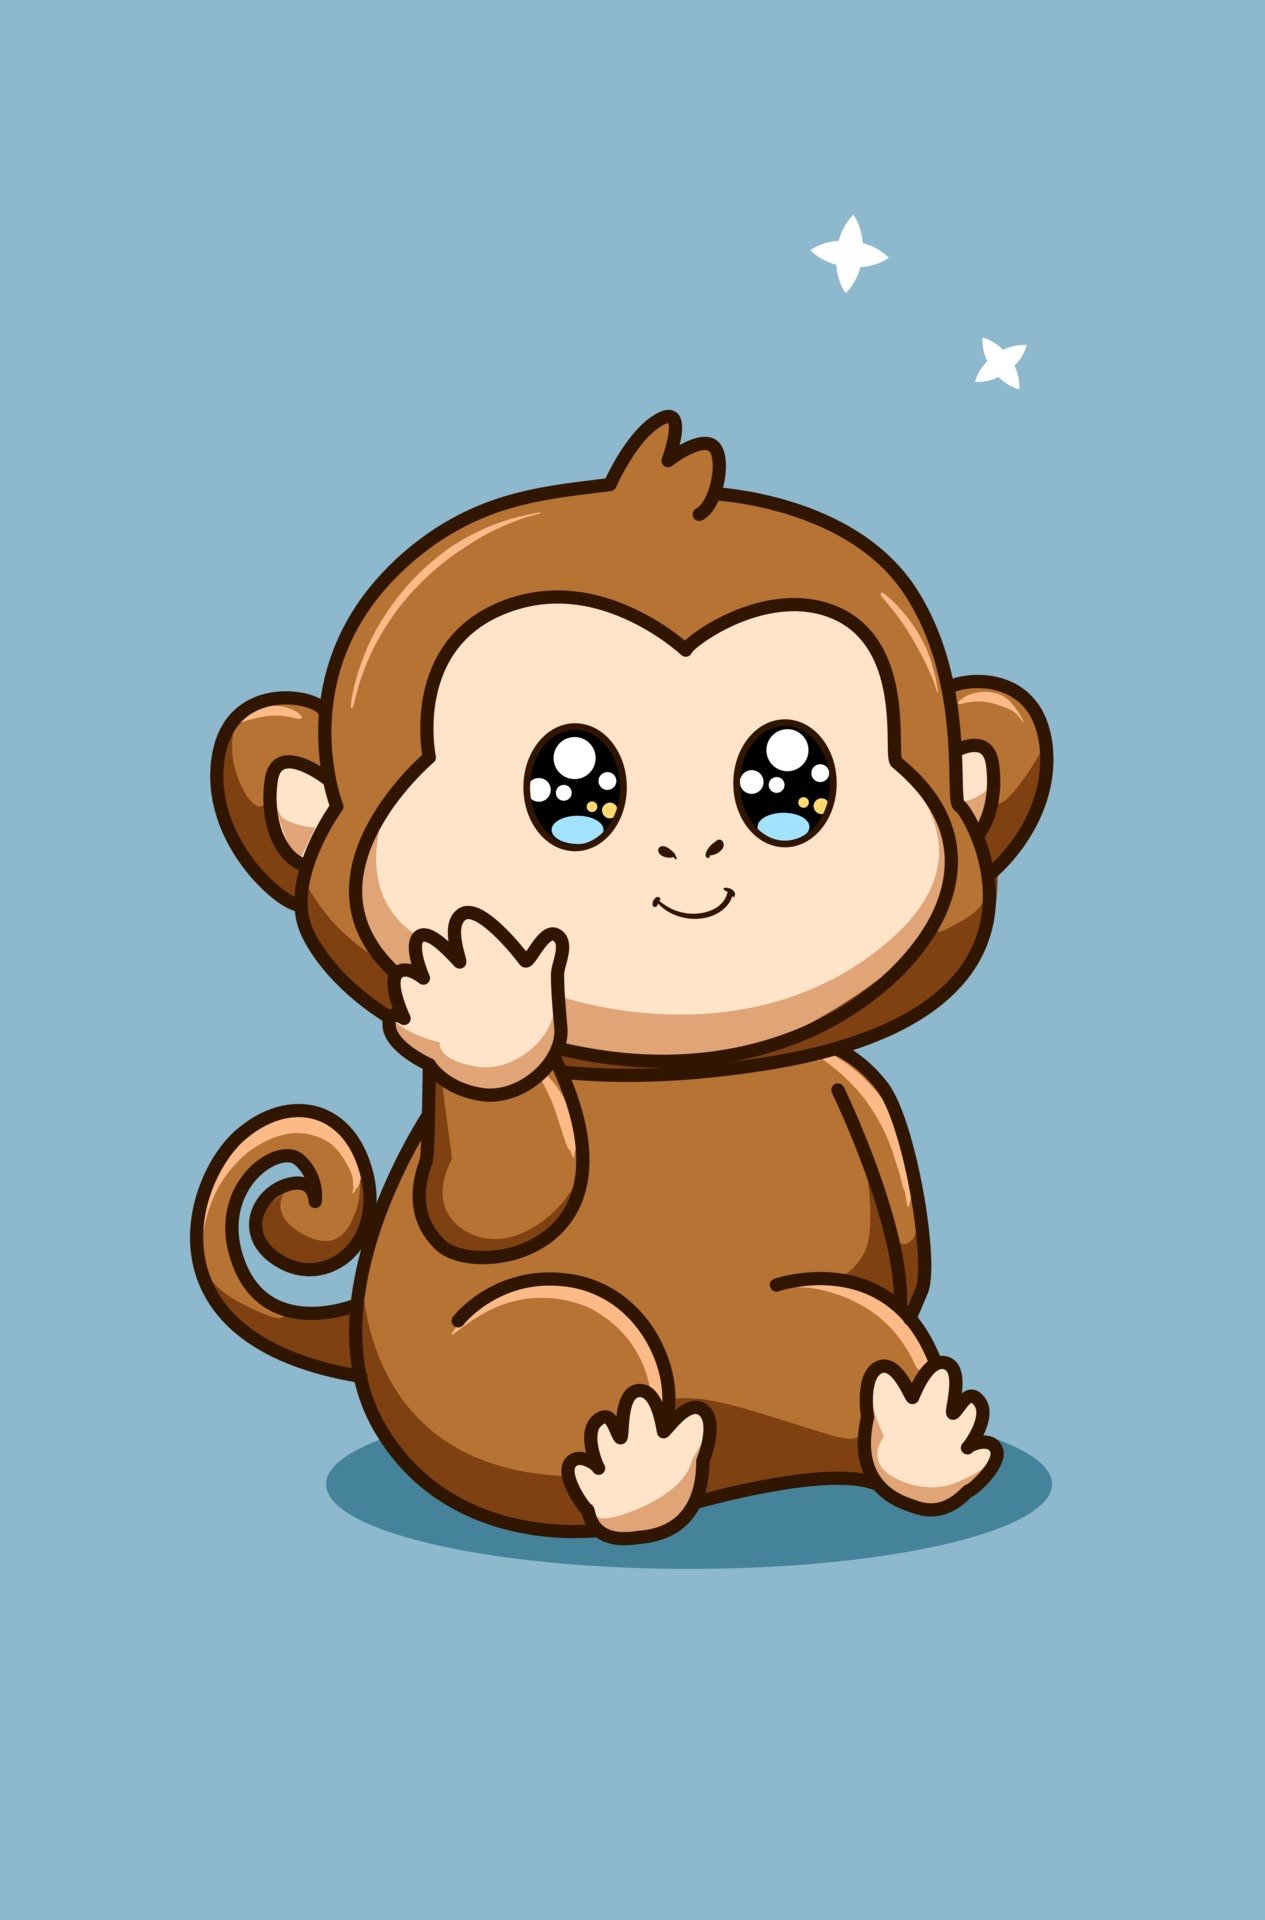 Con khỉ dễ thương: Con khỉ dễ thương sẽ khiến bạn khó lòng rời mắt. Hãy chiêm ngưỡng những hình ảnh con khỉ đang ăn, chơi và ngủ. Bạn sẽ không thể kìm lại nụ cười khi xem chúng vui vẻ khám phá thế giới xung quanh.